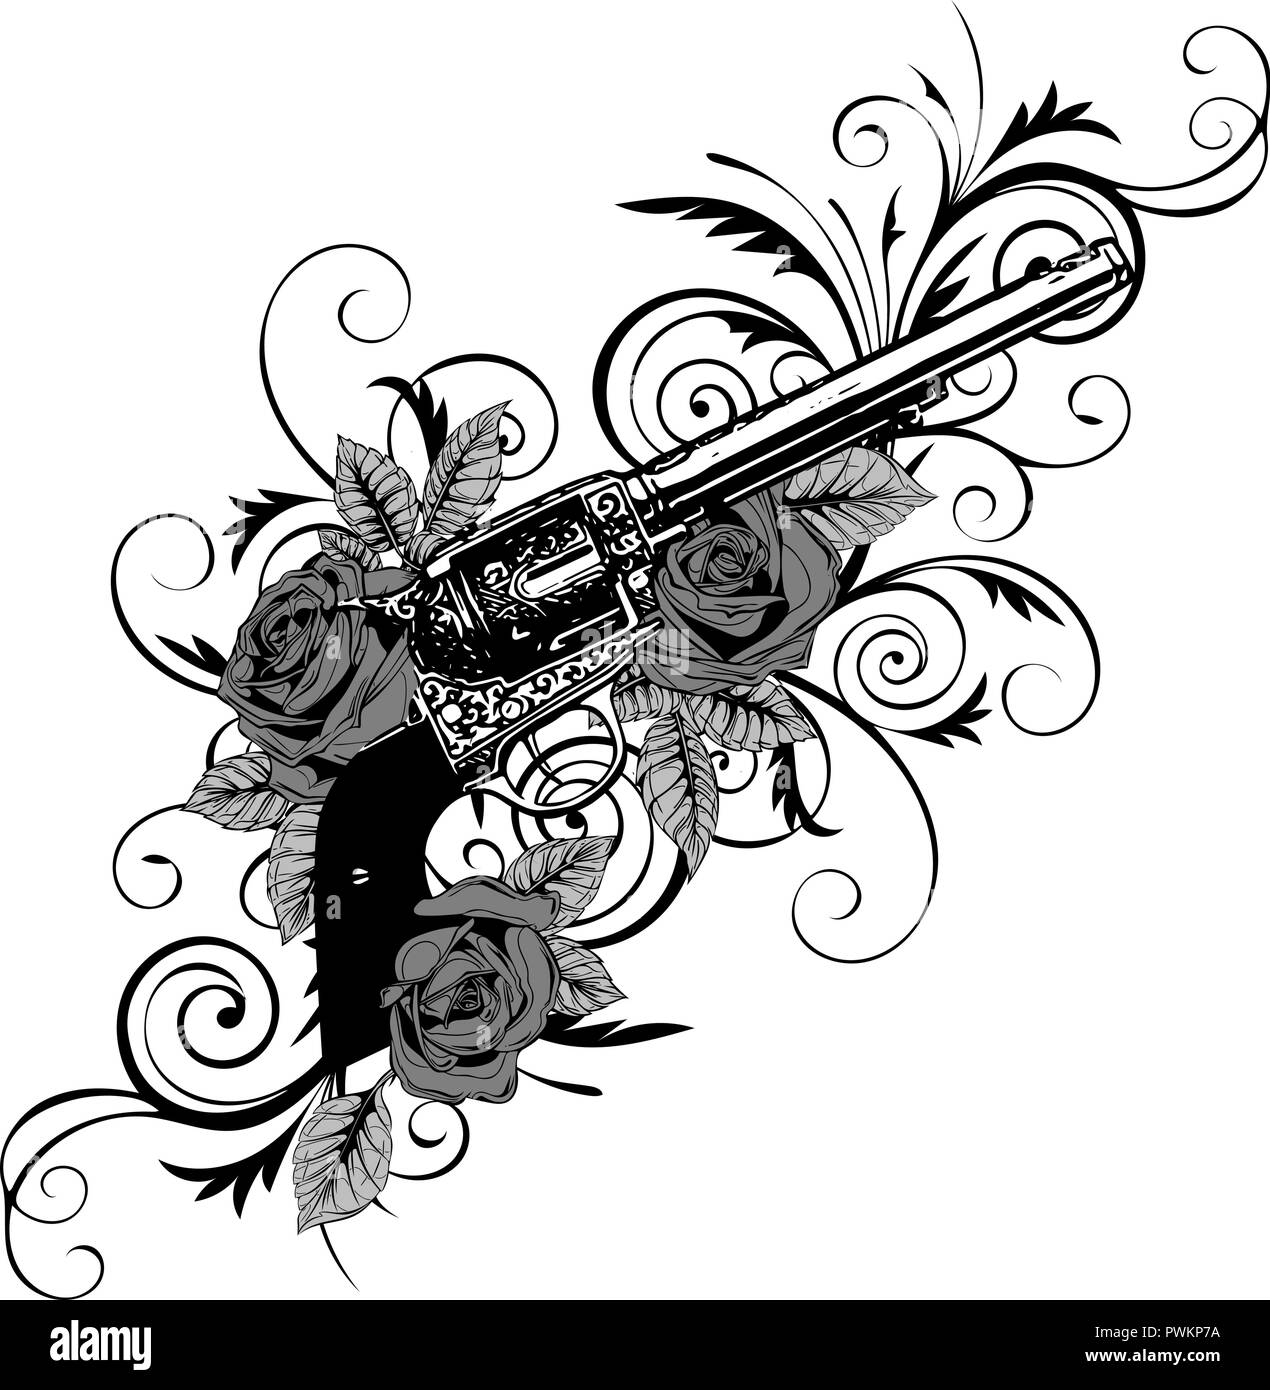 Illustrazione vettoriale di pistole sul fiore e ornamenti floreali con tatuaggio lo stile di disegno Illustrazione Vettoriale